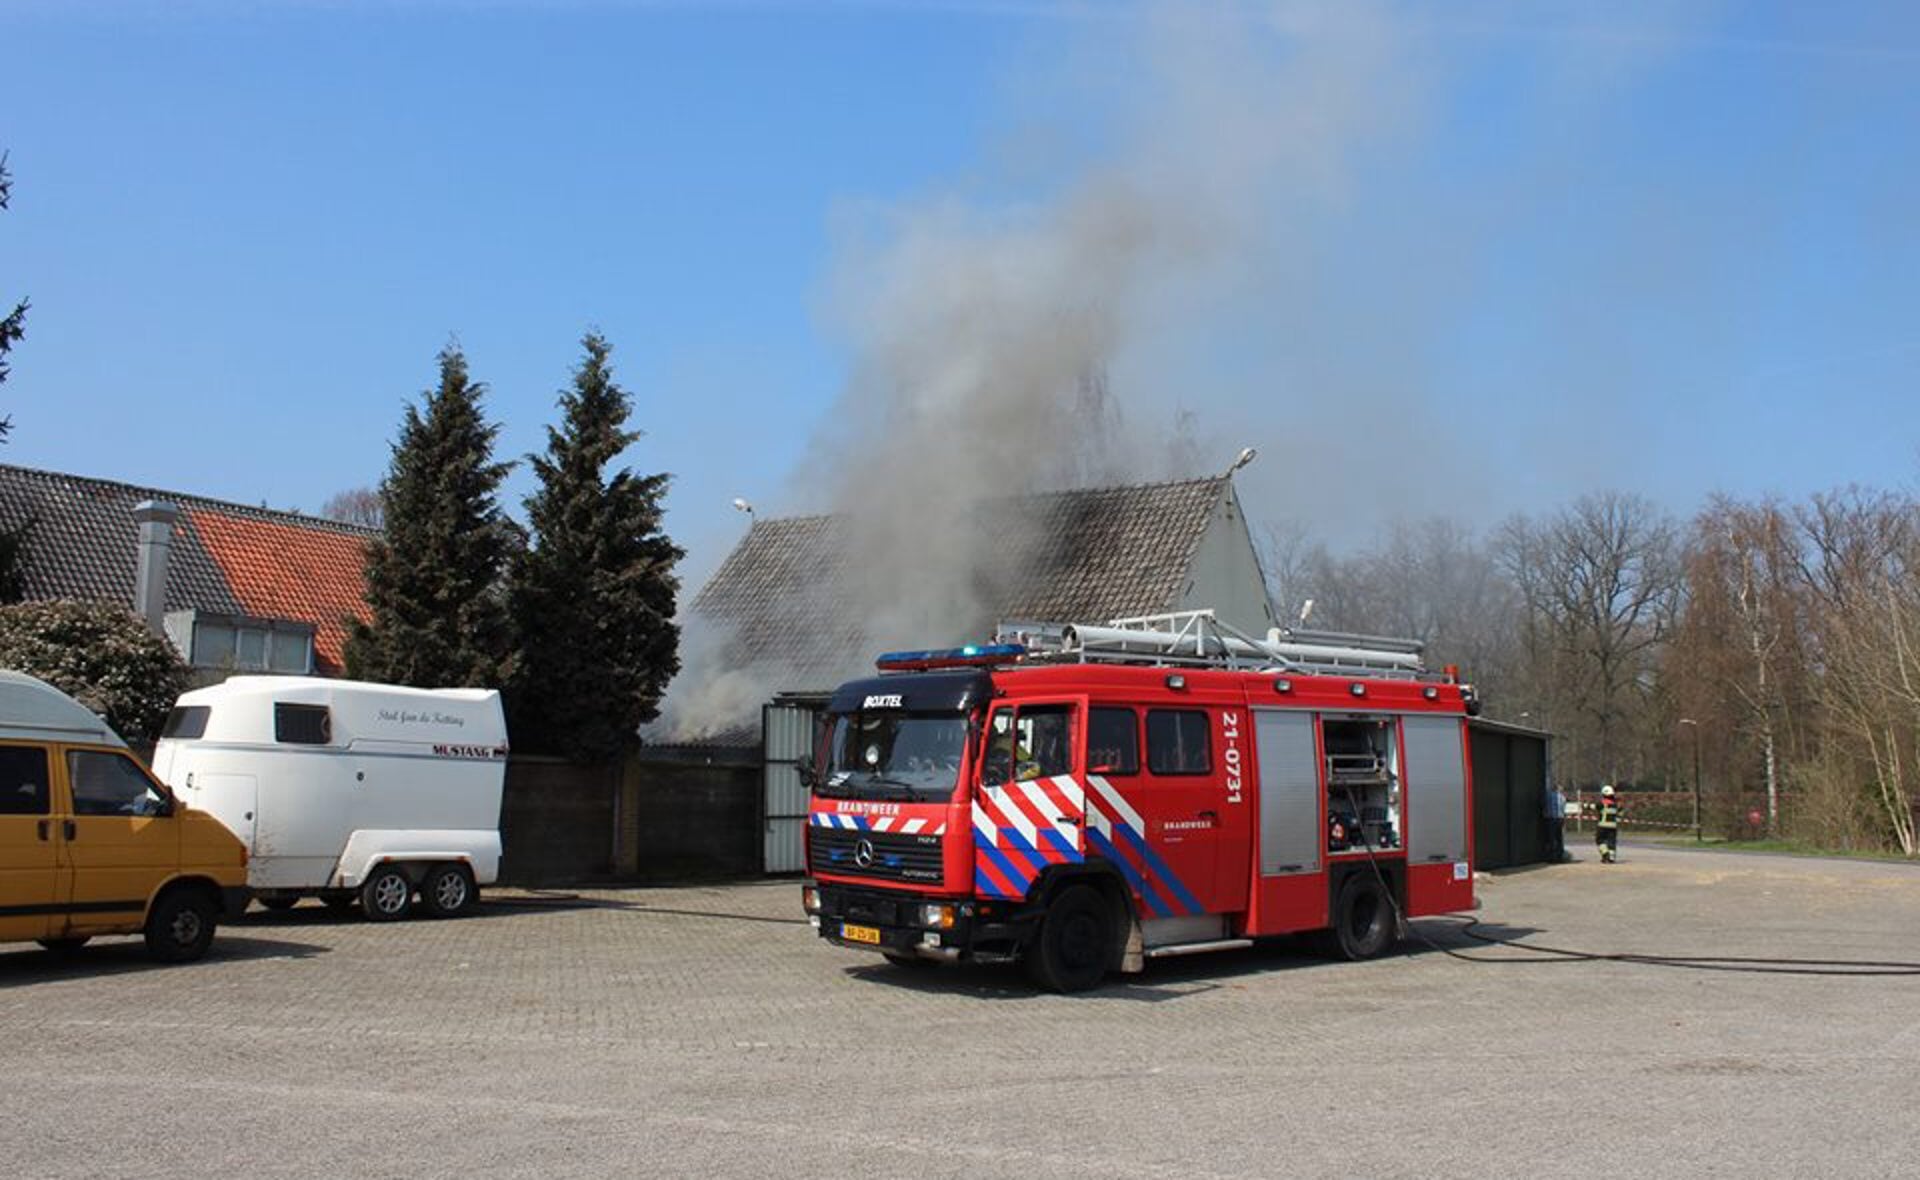 Donderdagmiddag woedde er in de schuur nabij De Oude Ketting aan de Bosschweg een kleine brand. De brandweer had het vuur snel onder controle. 's Nachts stond het bijgebouw weer in lichterlaaie. (Foto: Annelieke van der Linden).